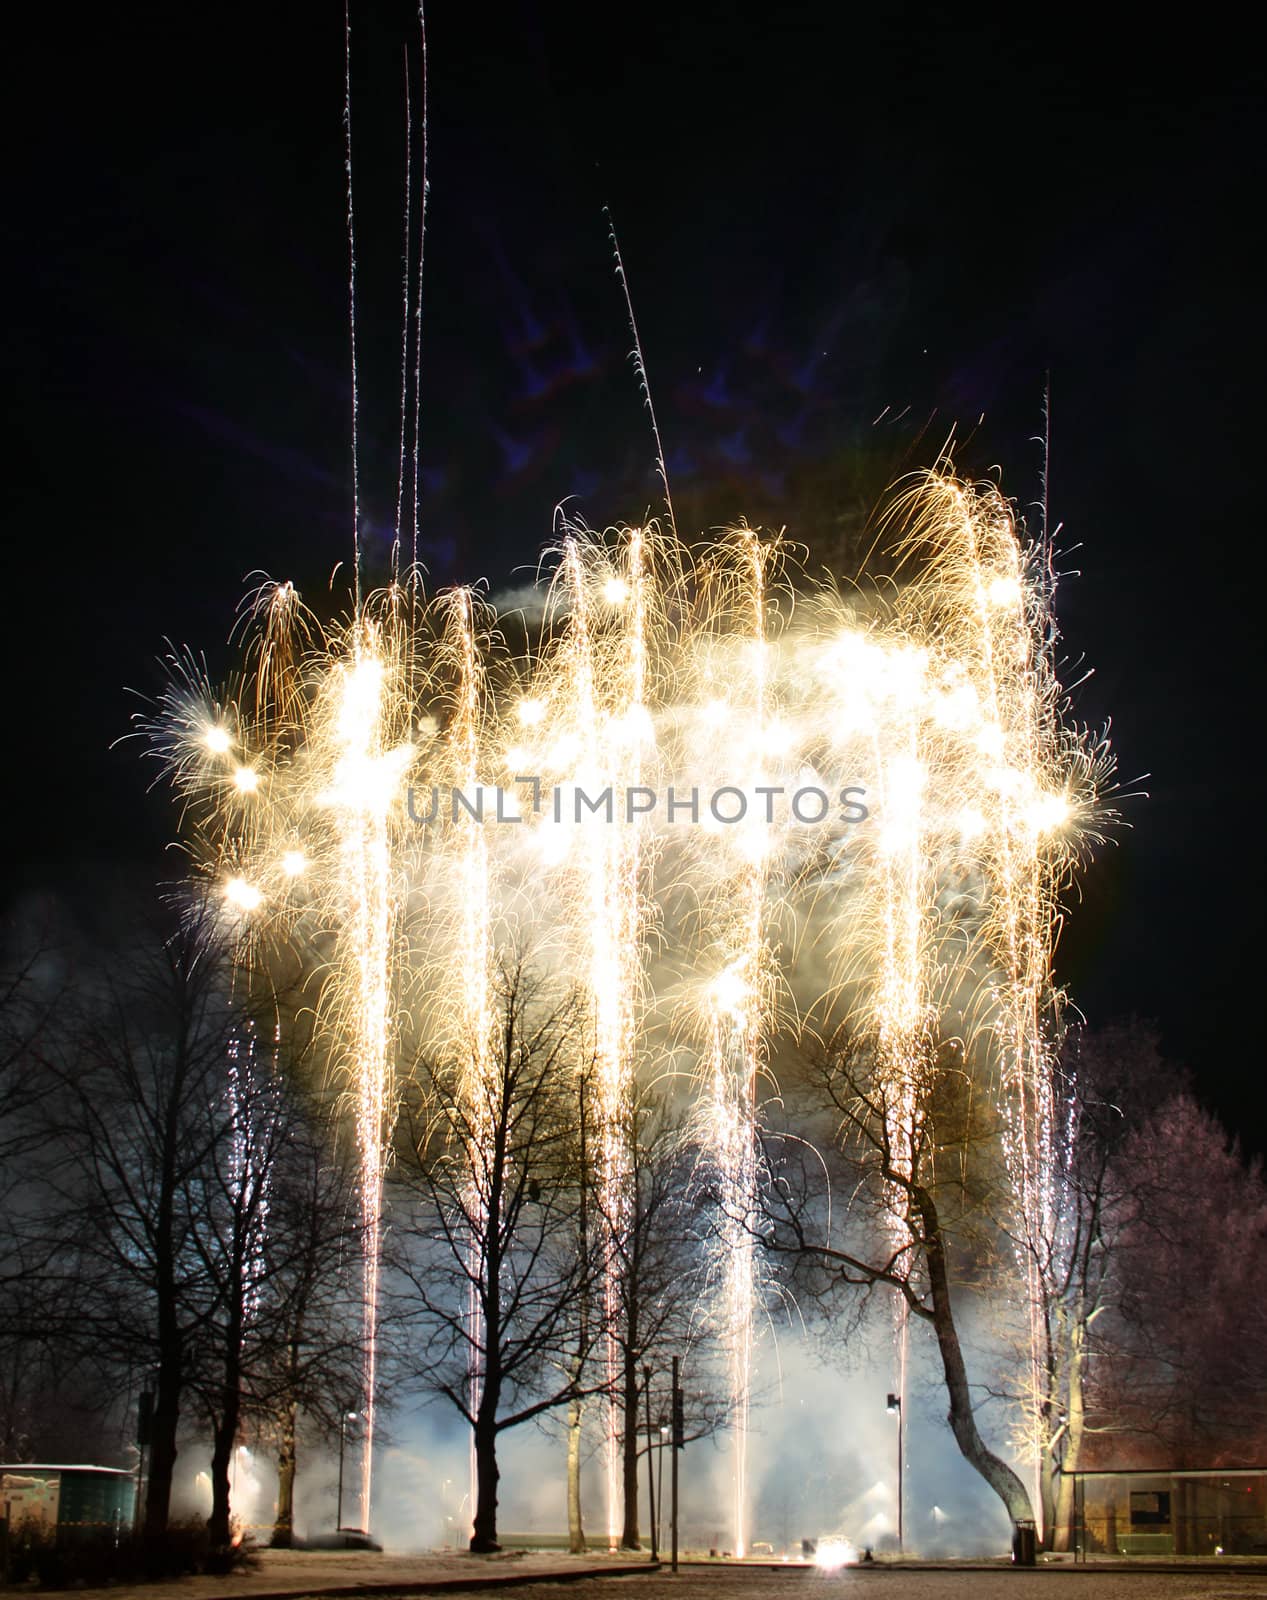 Fireworks in park by anterovium